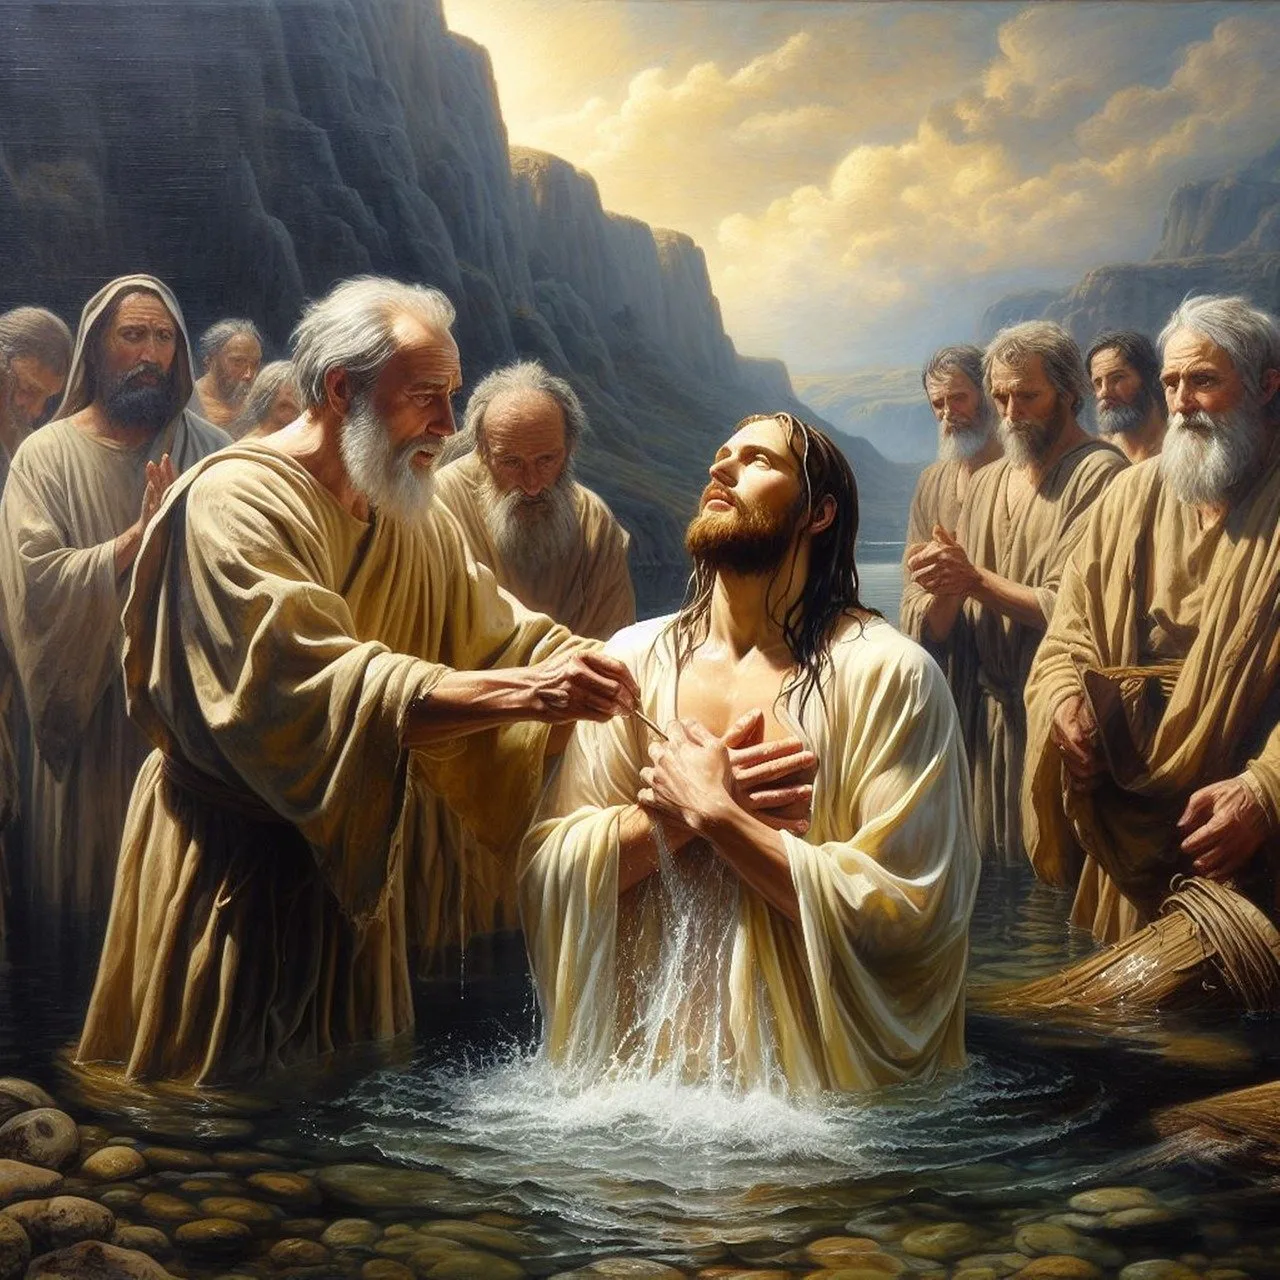 Baptism: A Symbol of Renewal and Spiritual Rebirth